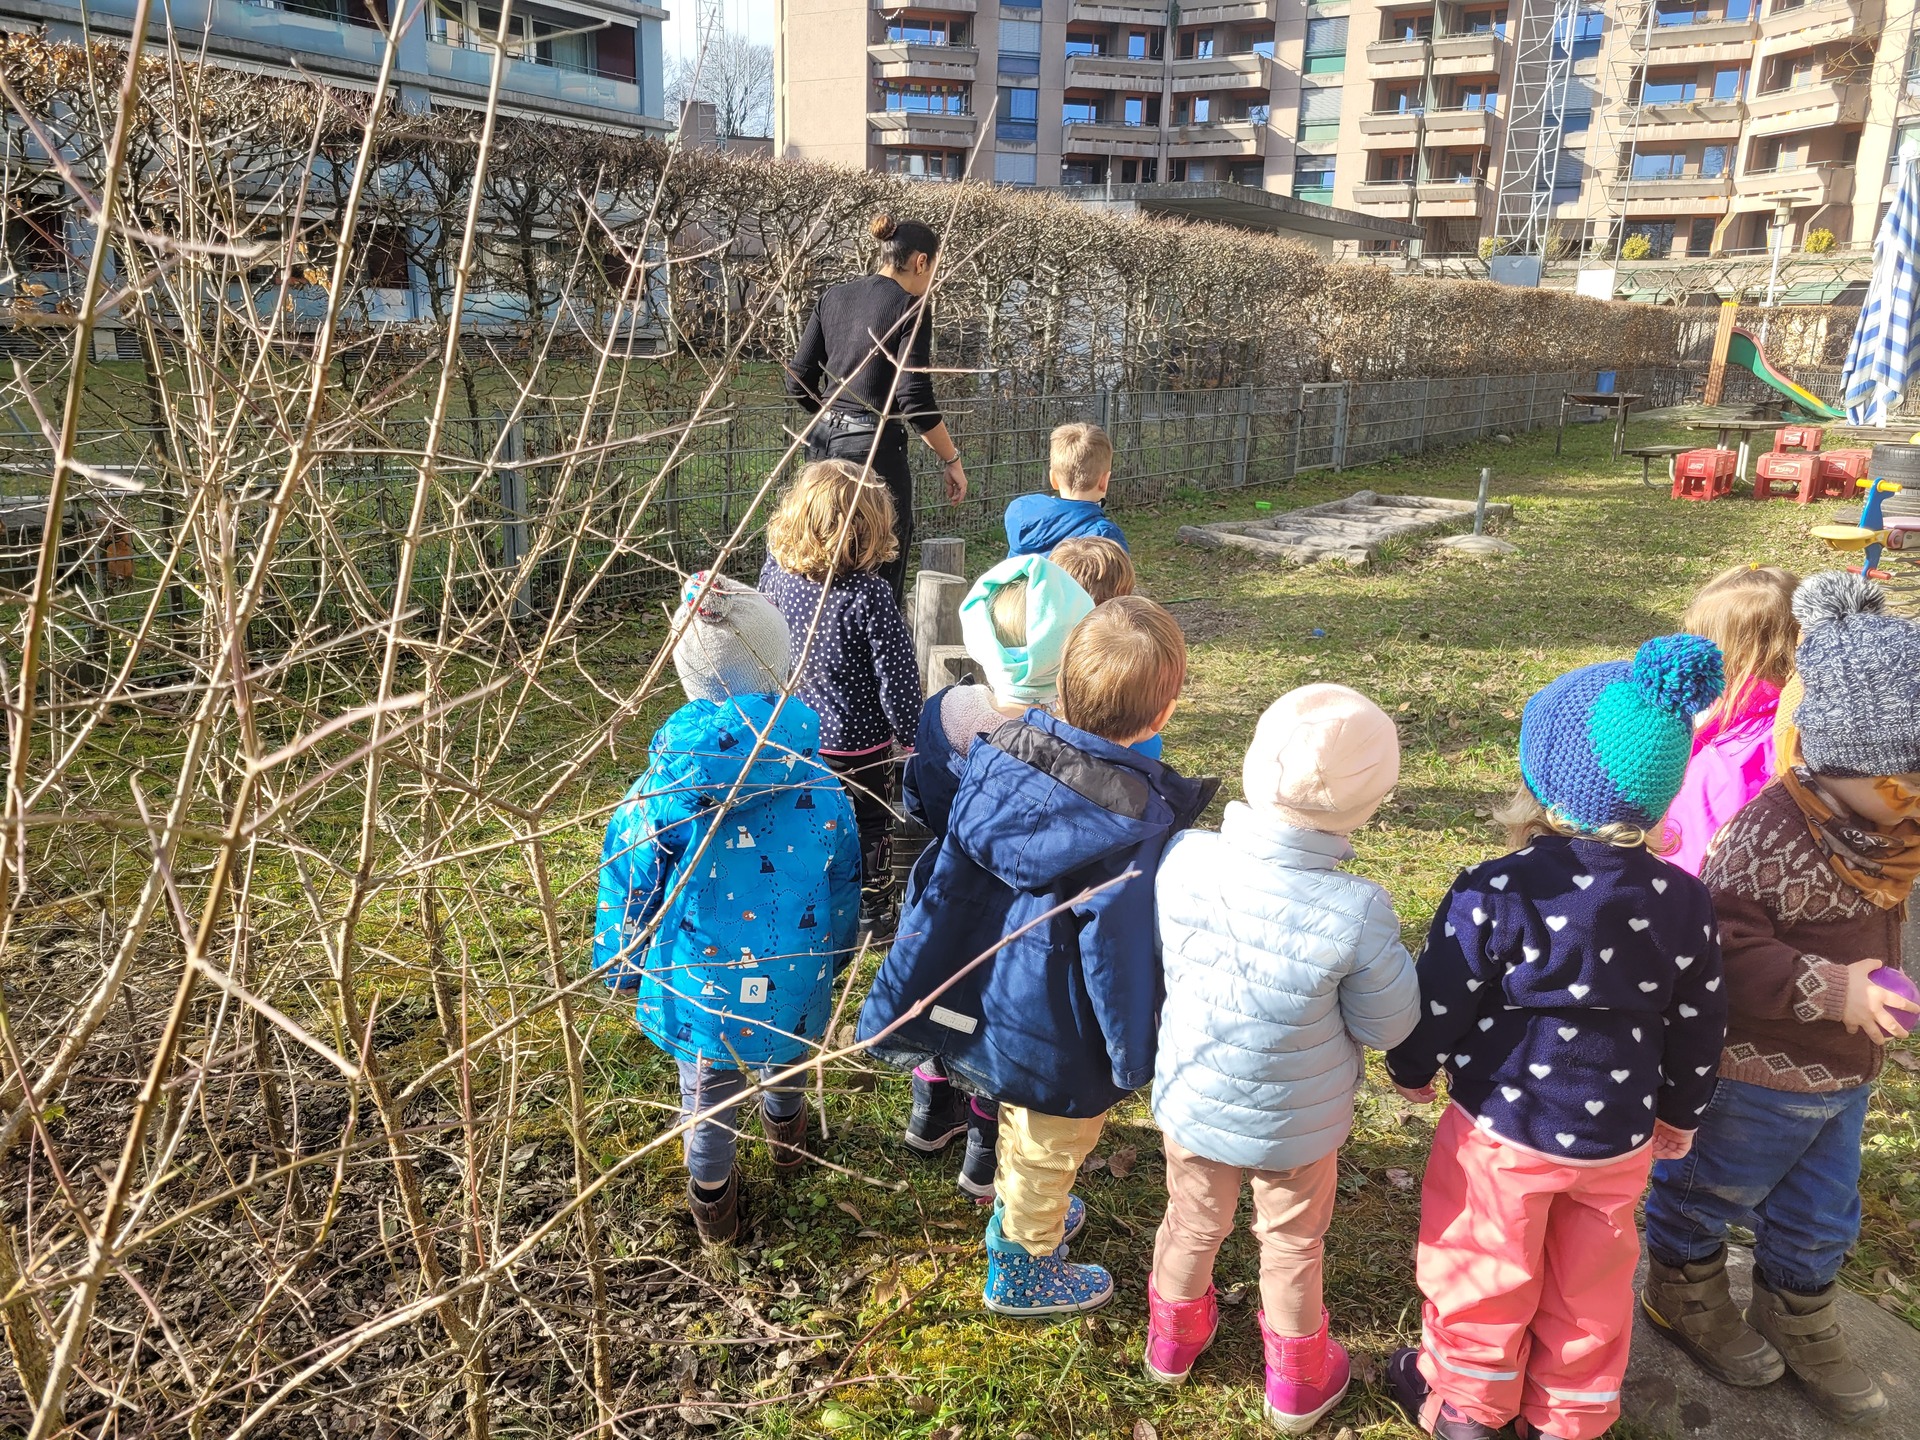 Kita kids & co Wannerstrasse Kinder in einer Reihe im Garten